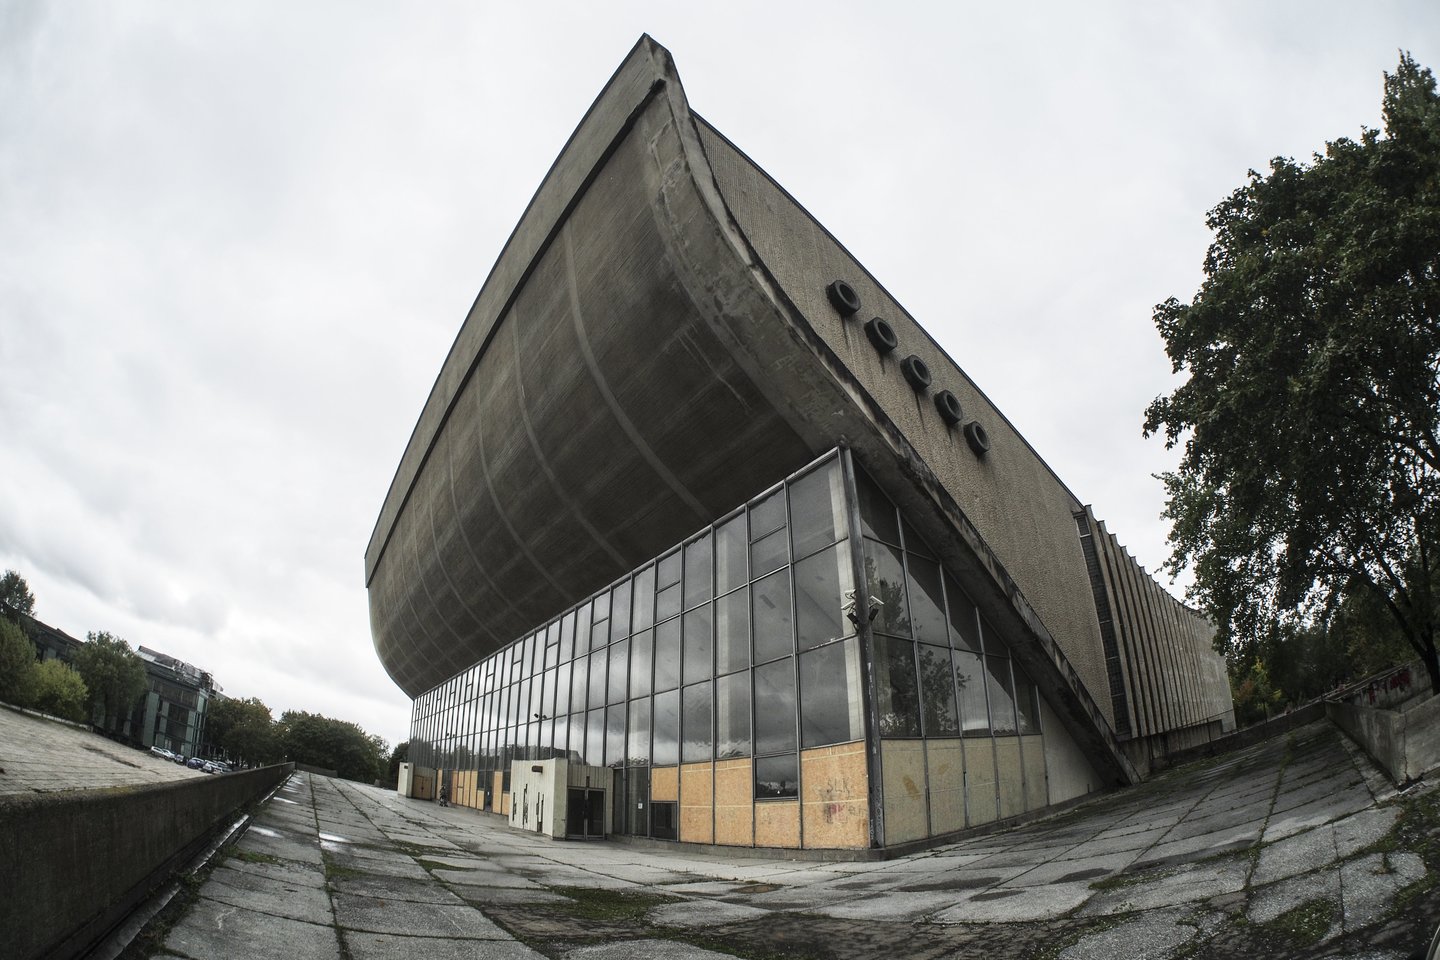 Nebenaudojamų Vilniaus koncertų ir sporto rūmų rekonstrukcija ir Konferencijų bei kongresų rūmų įrengimas kainuos 28,3 mln. eurų.<br>V.Ščiavinsko nuotr.